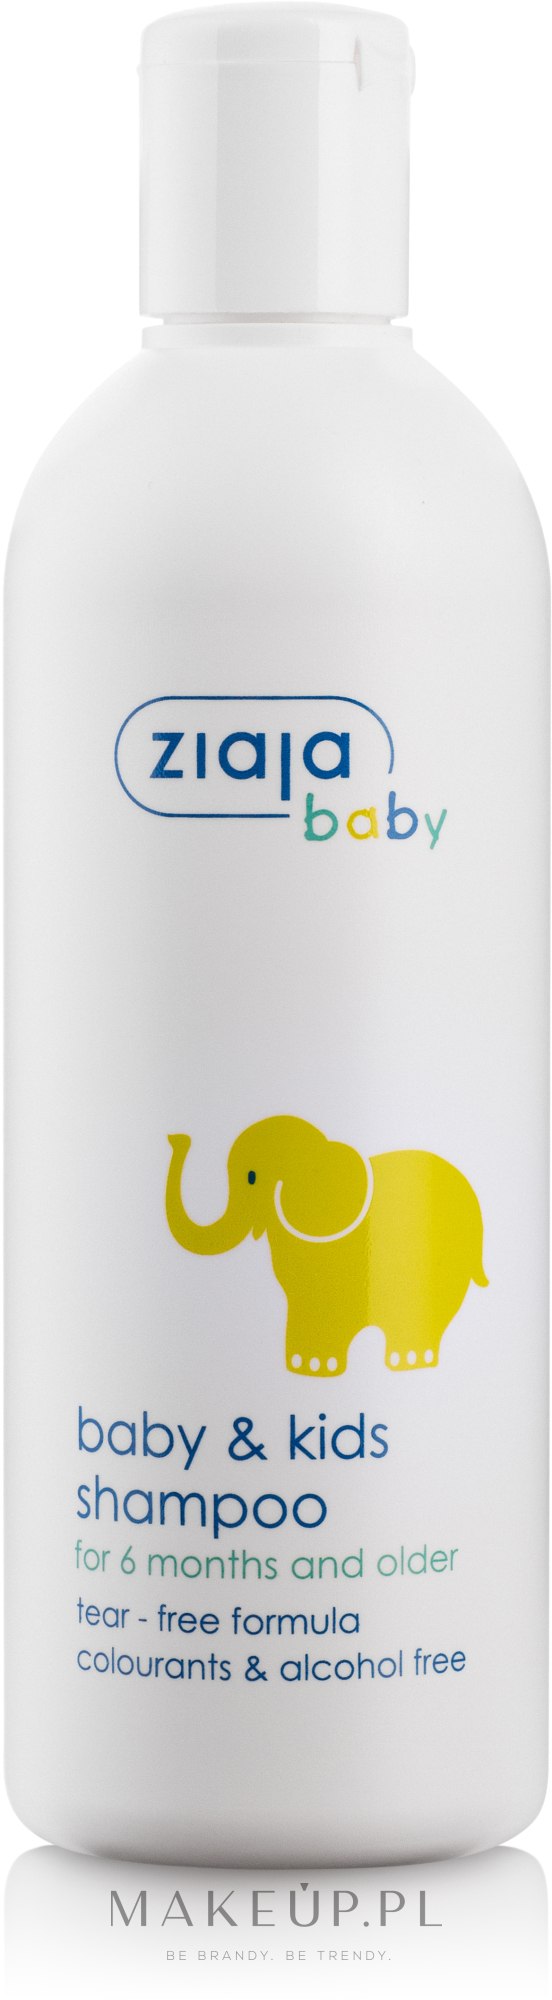 ziajka szampon dla dzieci i niemowląt od 6 miesiąca życia